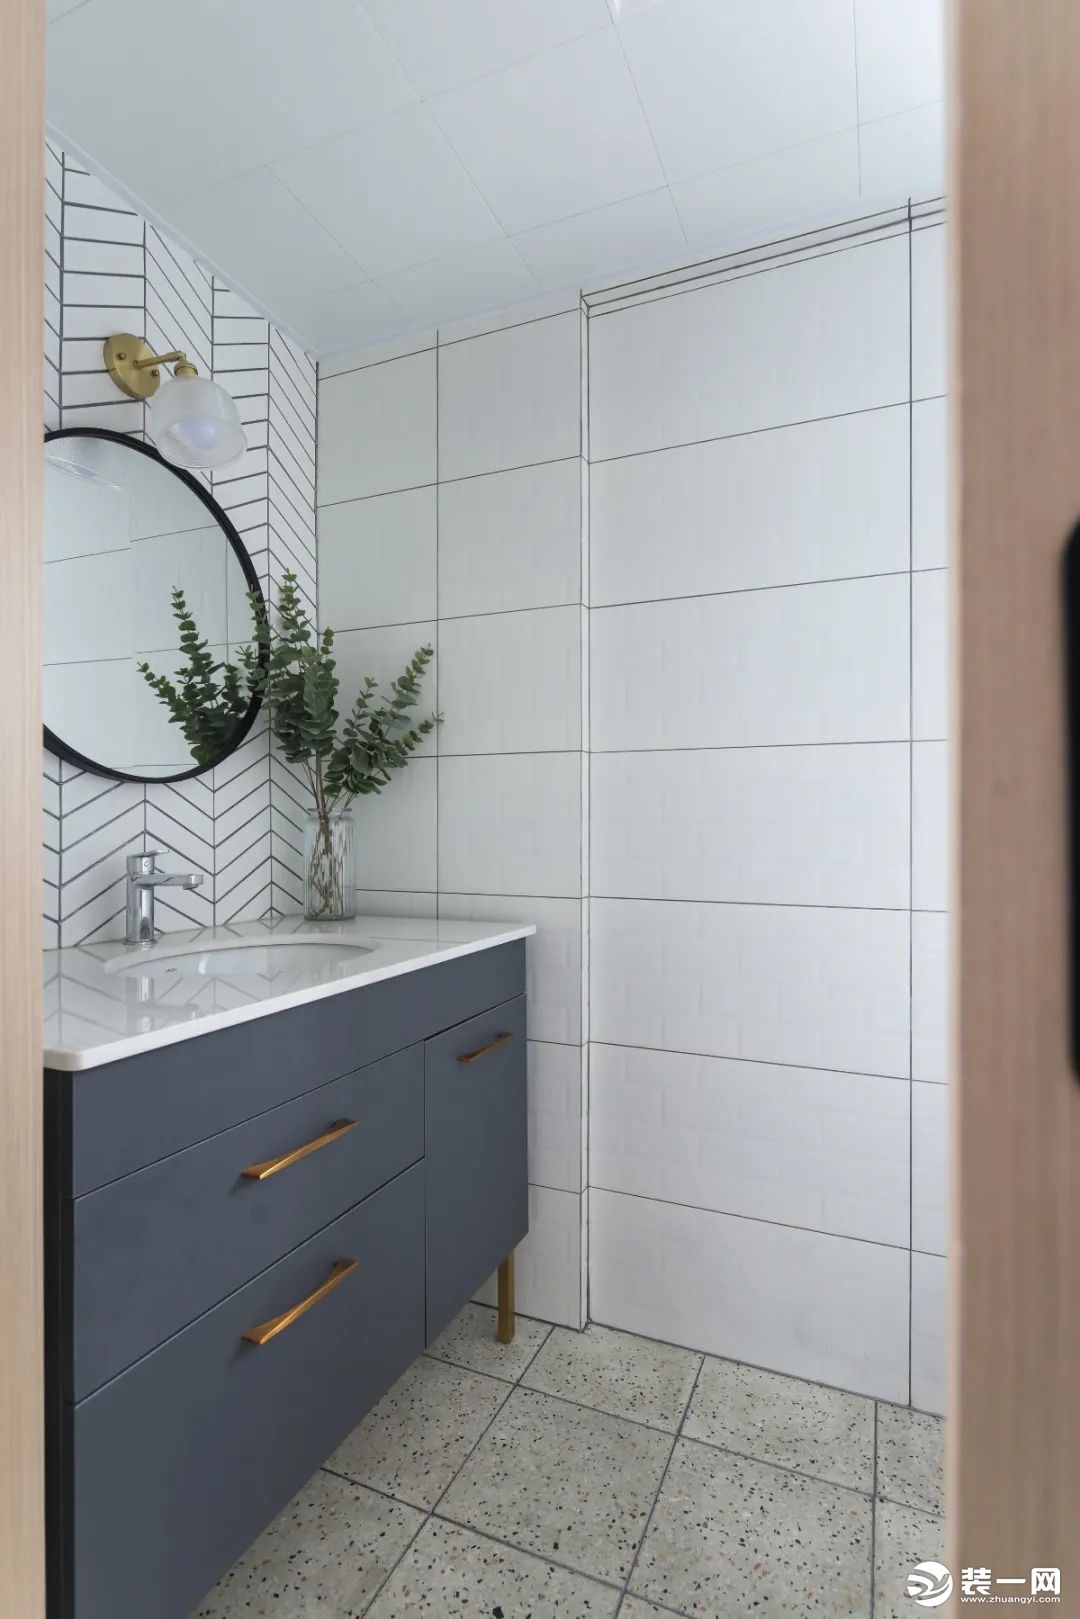  卫生间的水磨石地砖+白色墙砖，定制灰色洗手盆前方的墙面是鱼骨铺的墙面砖，挂一面圆形的镜子，让卫浴空